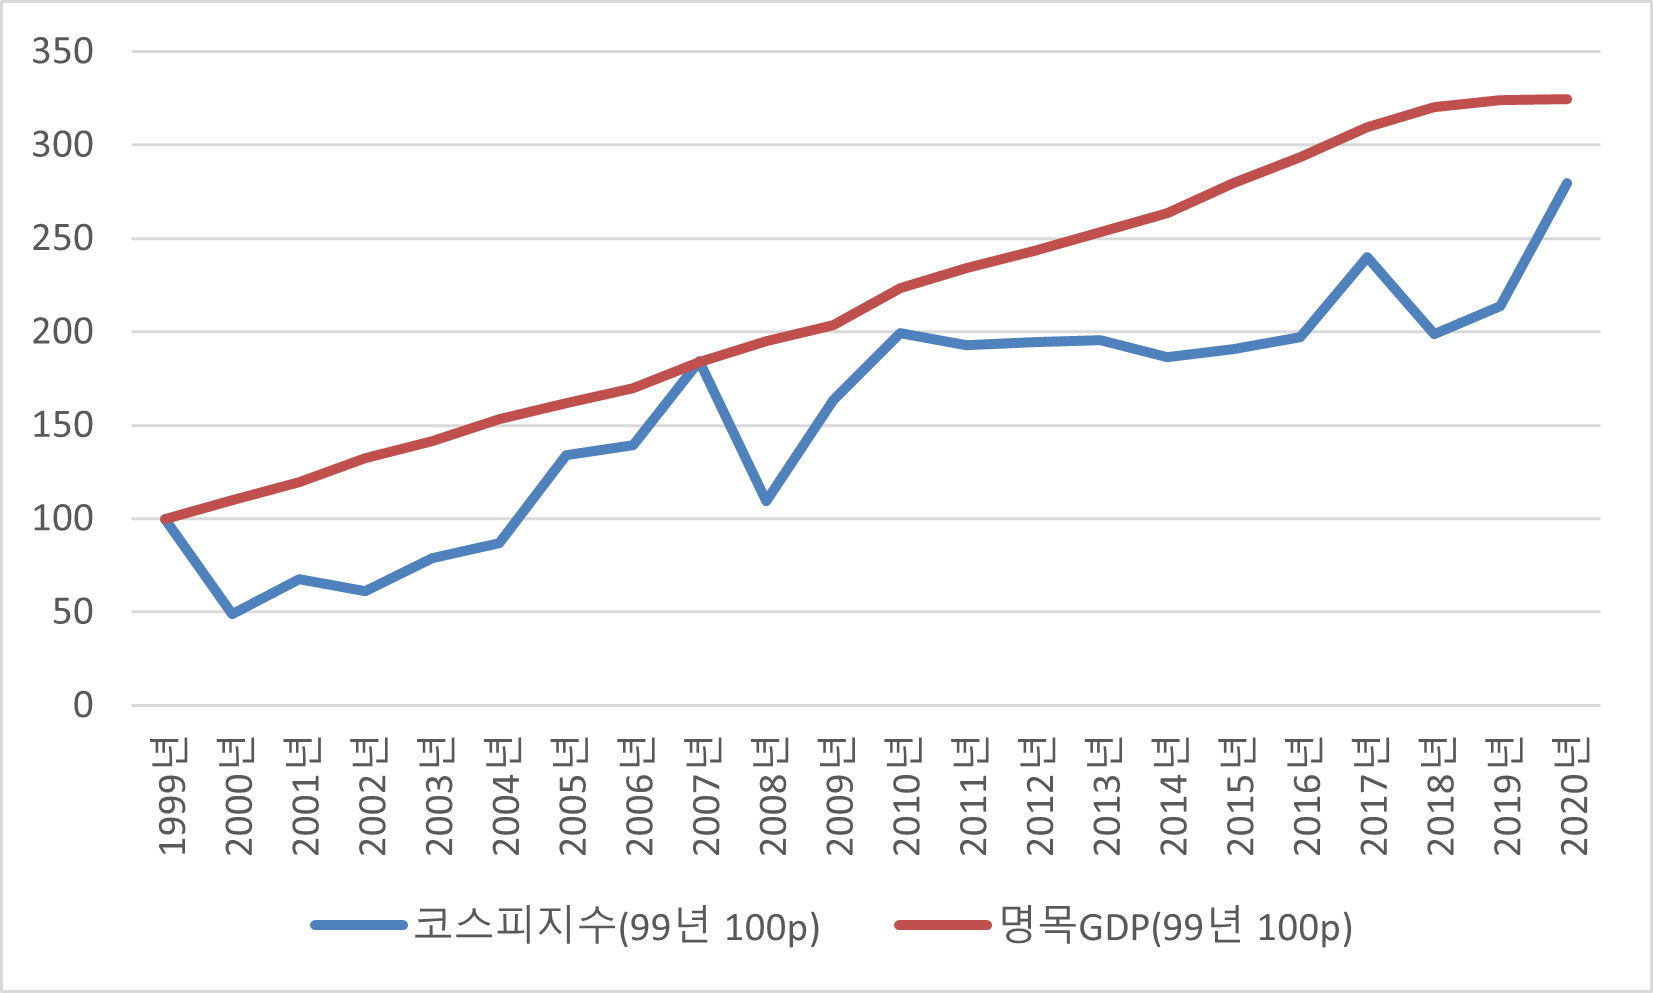 코스피 종합지수는 결국 명목 GDP 추이를 따라가는데, 자료분석 : lovefund이성수